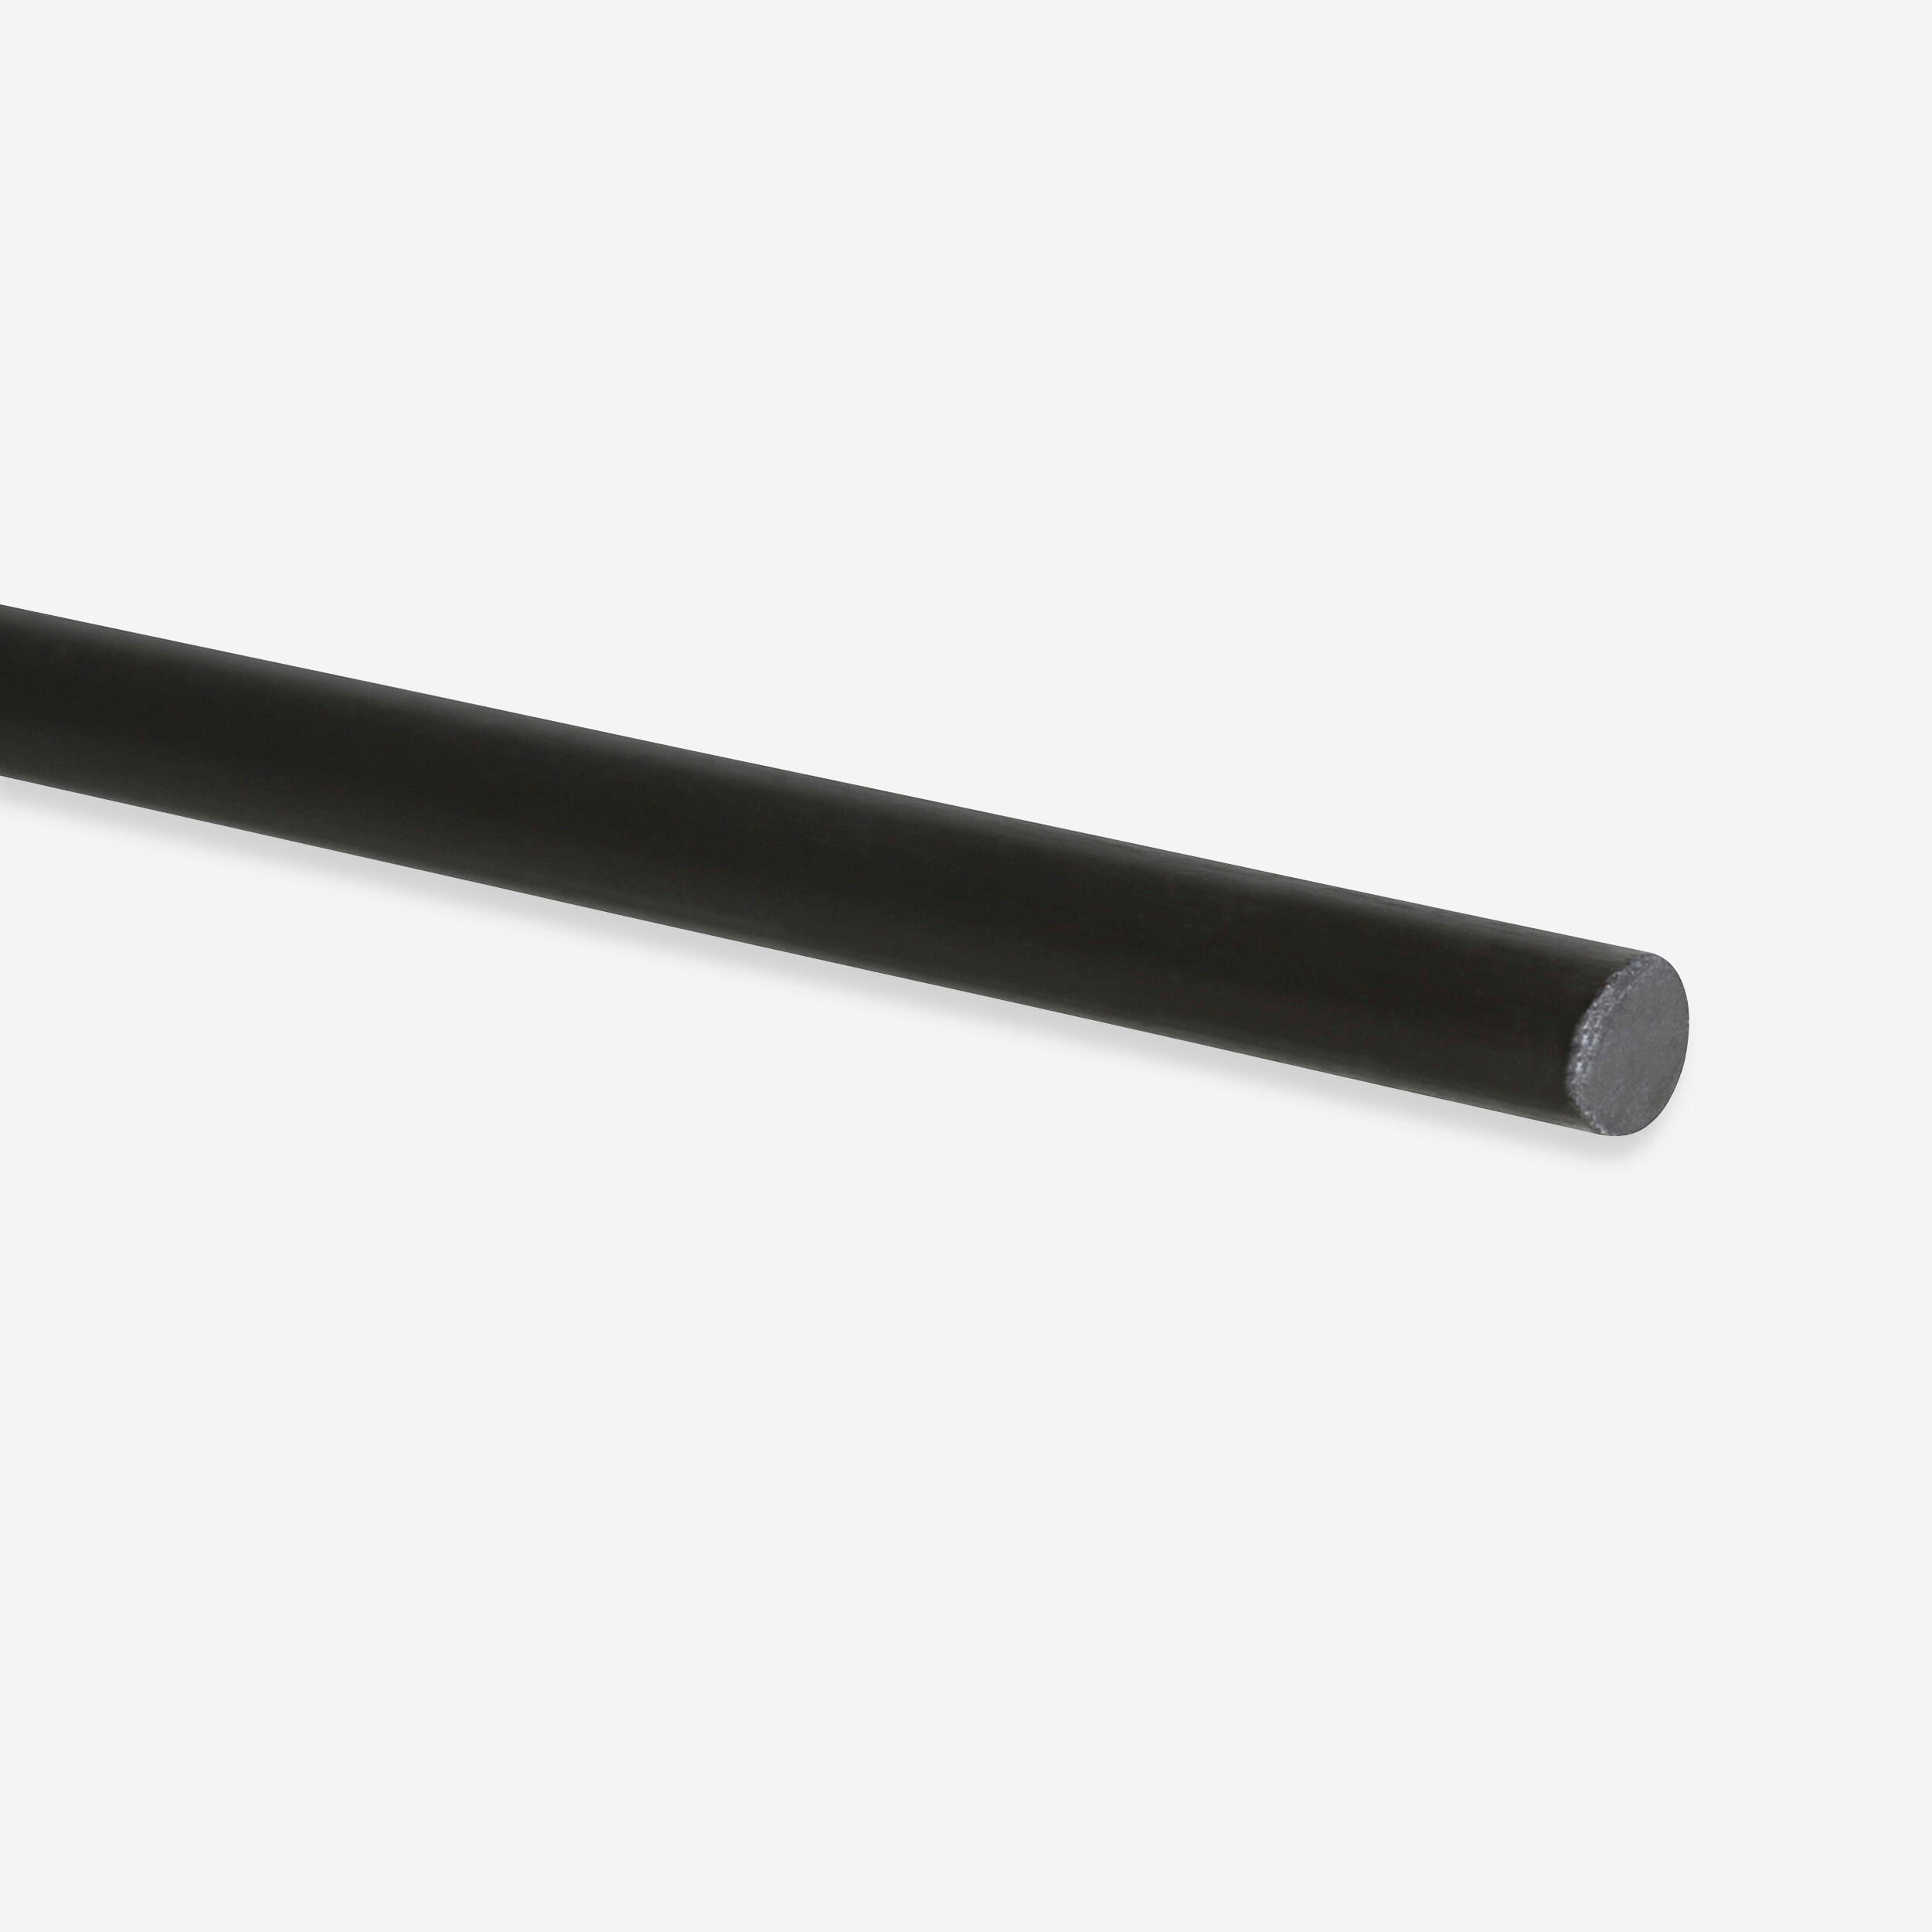 Carbon Rod 3 mm x 160 cm 1/3